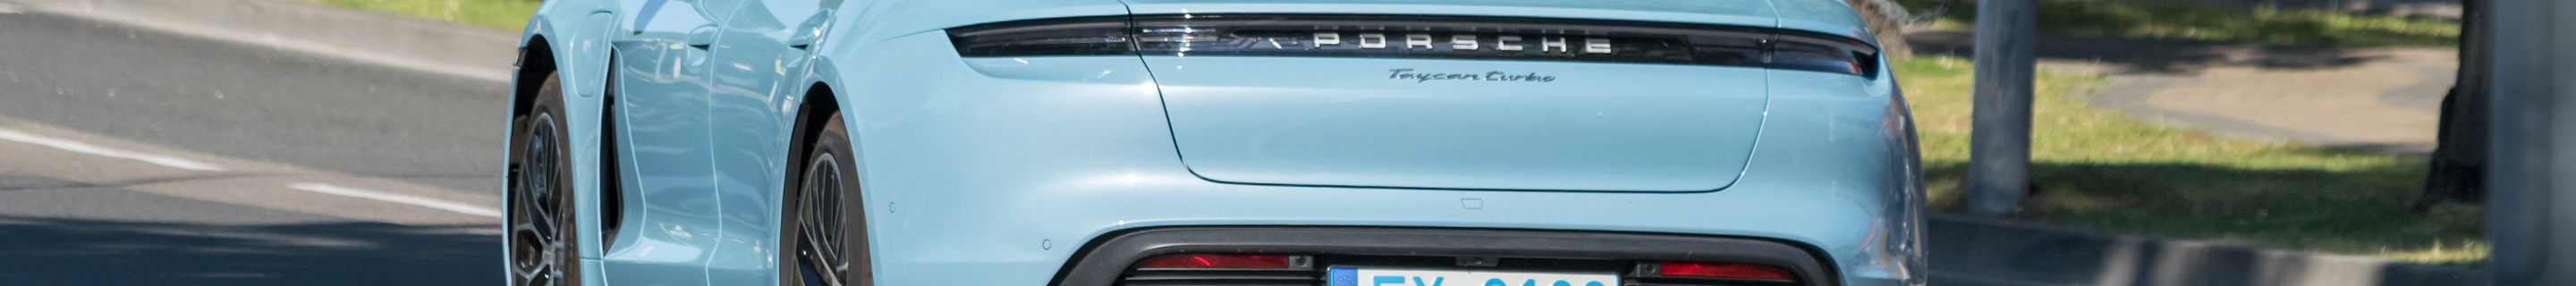 Porsche Taycan Turbo